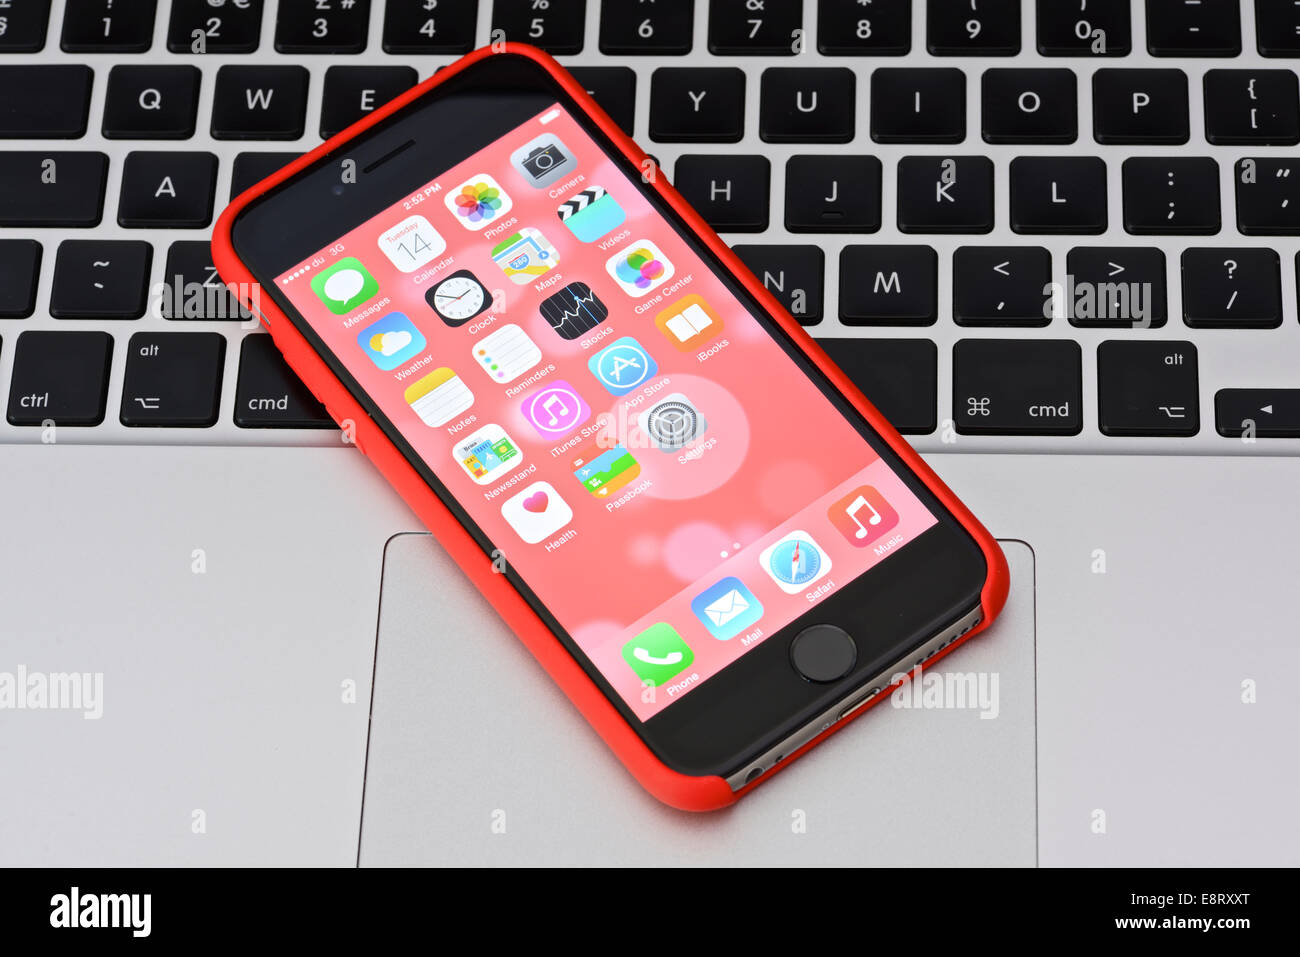 IPhone 6 cas en rouge sur un clavier Apple Macbook Banque D'Images